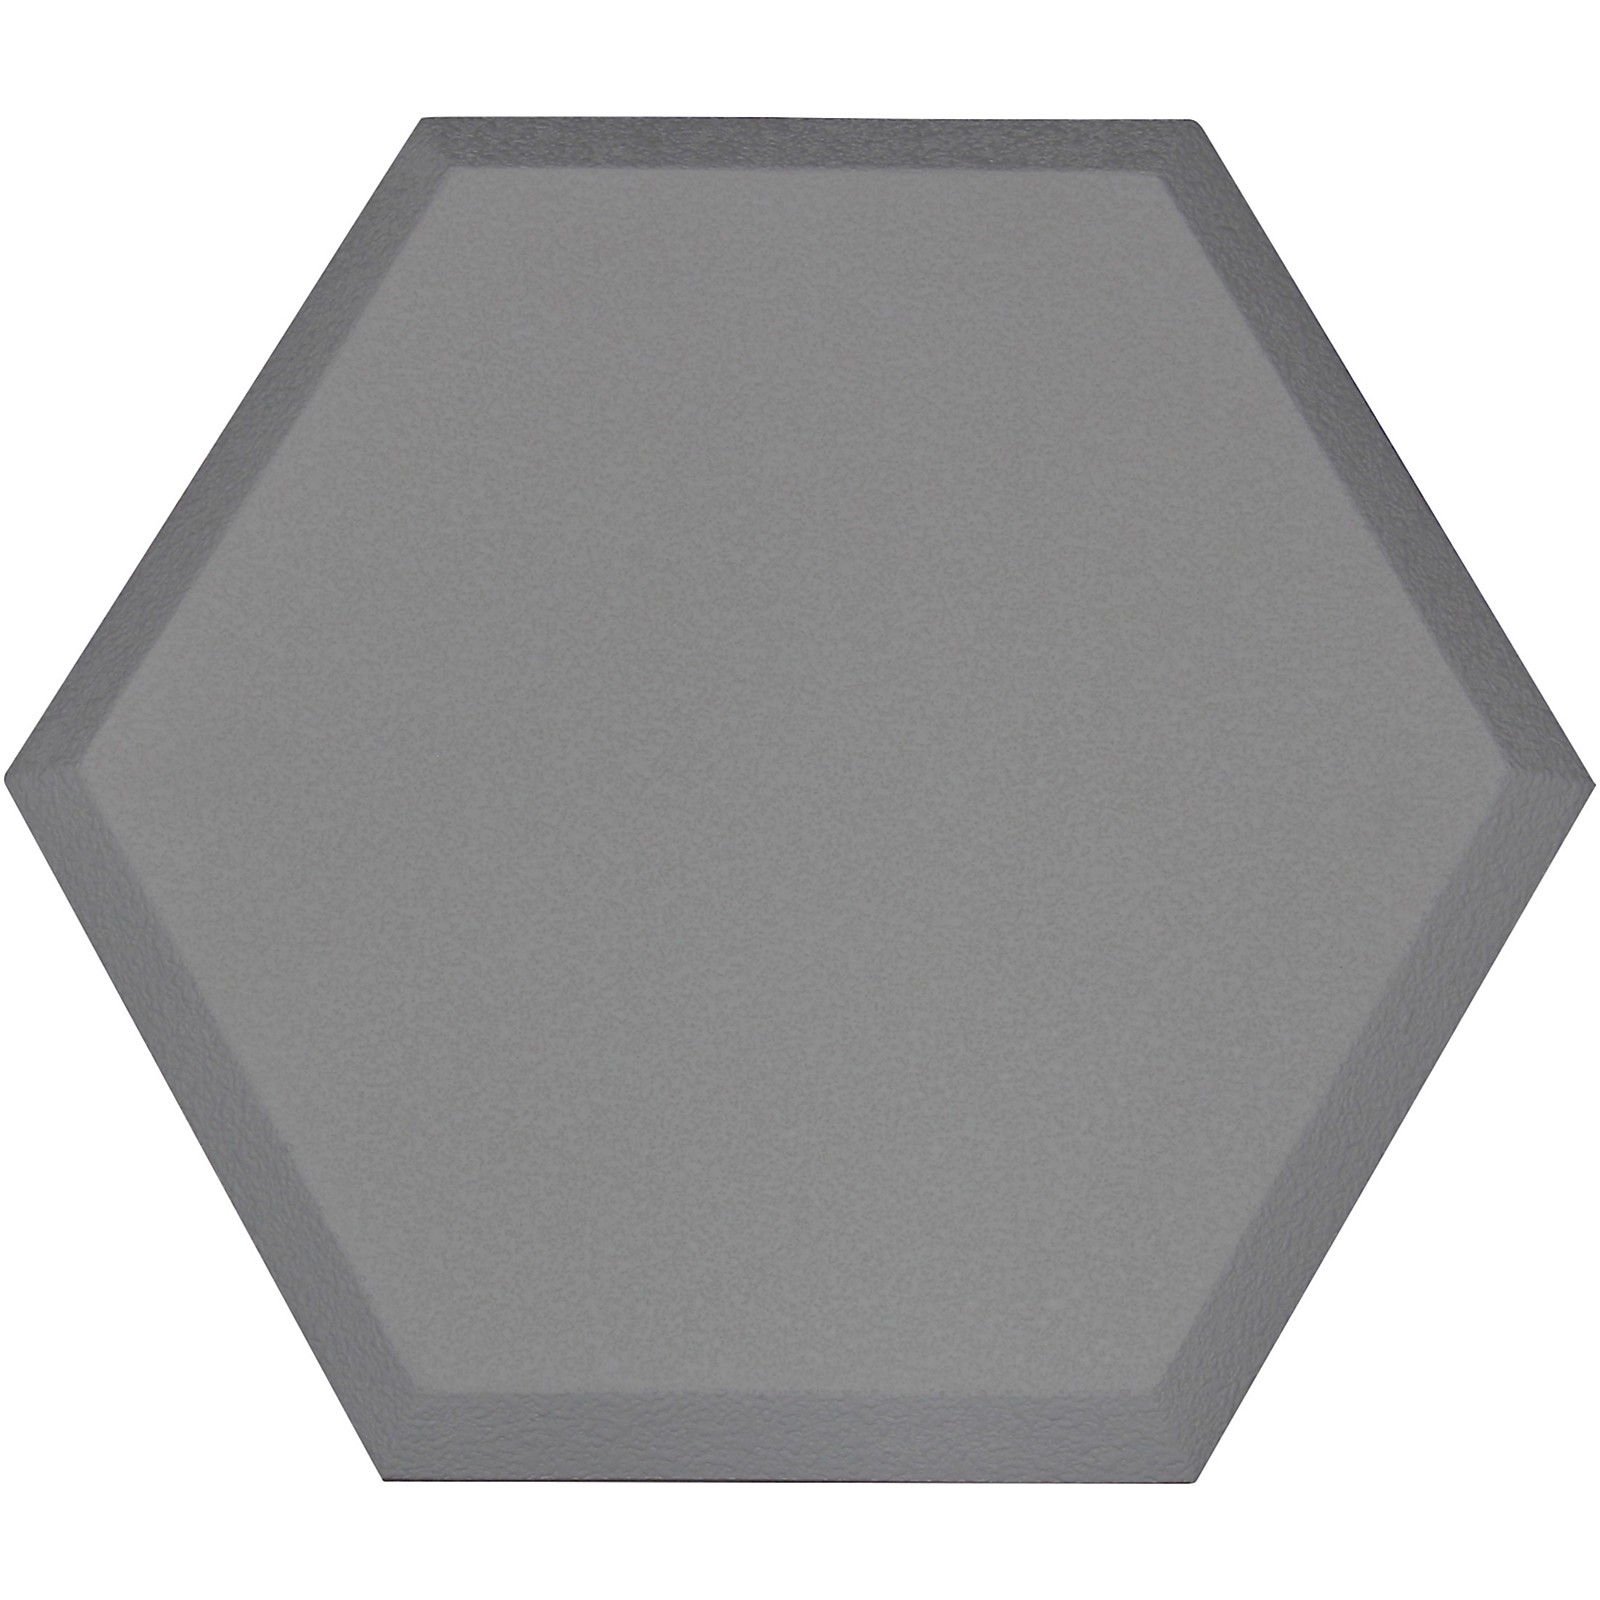 Primacoustic Element Hexagon Acoustic Panel Gray | Musician's Friend